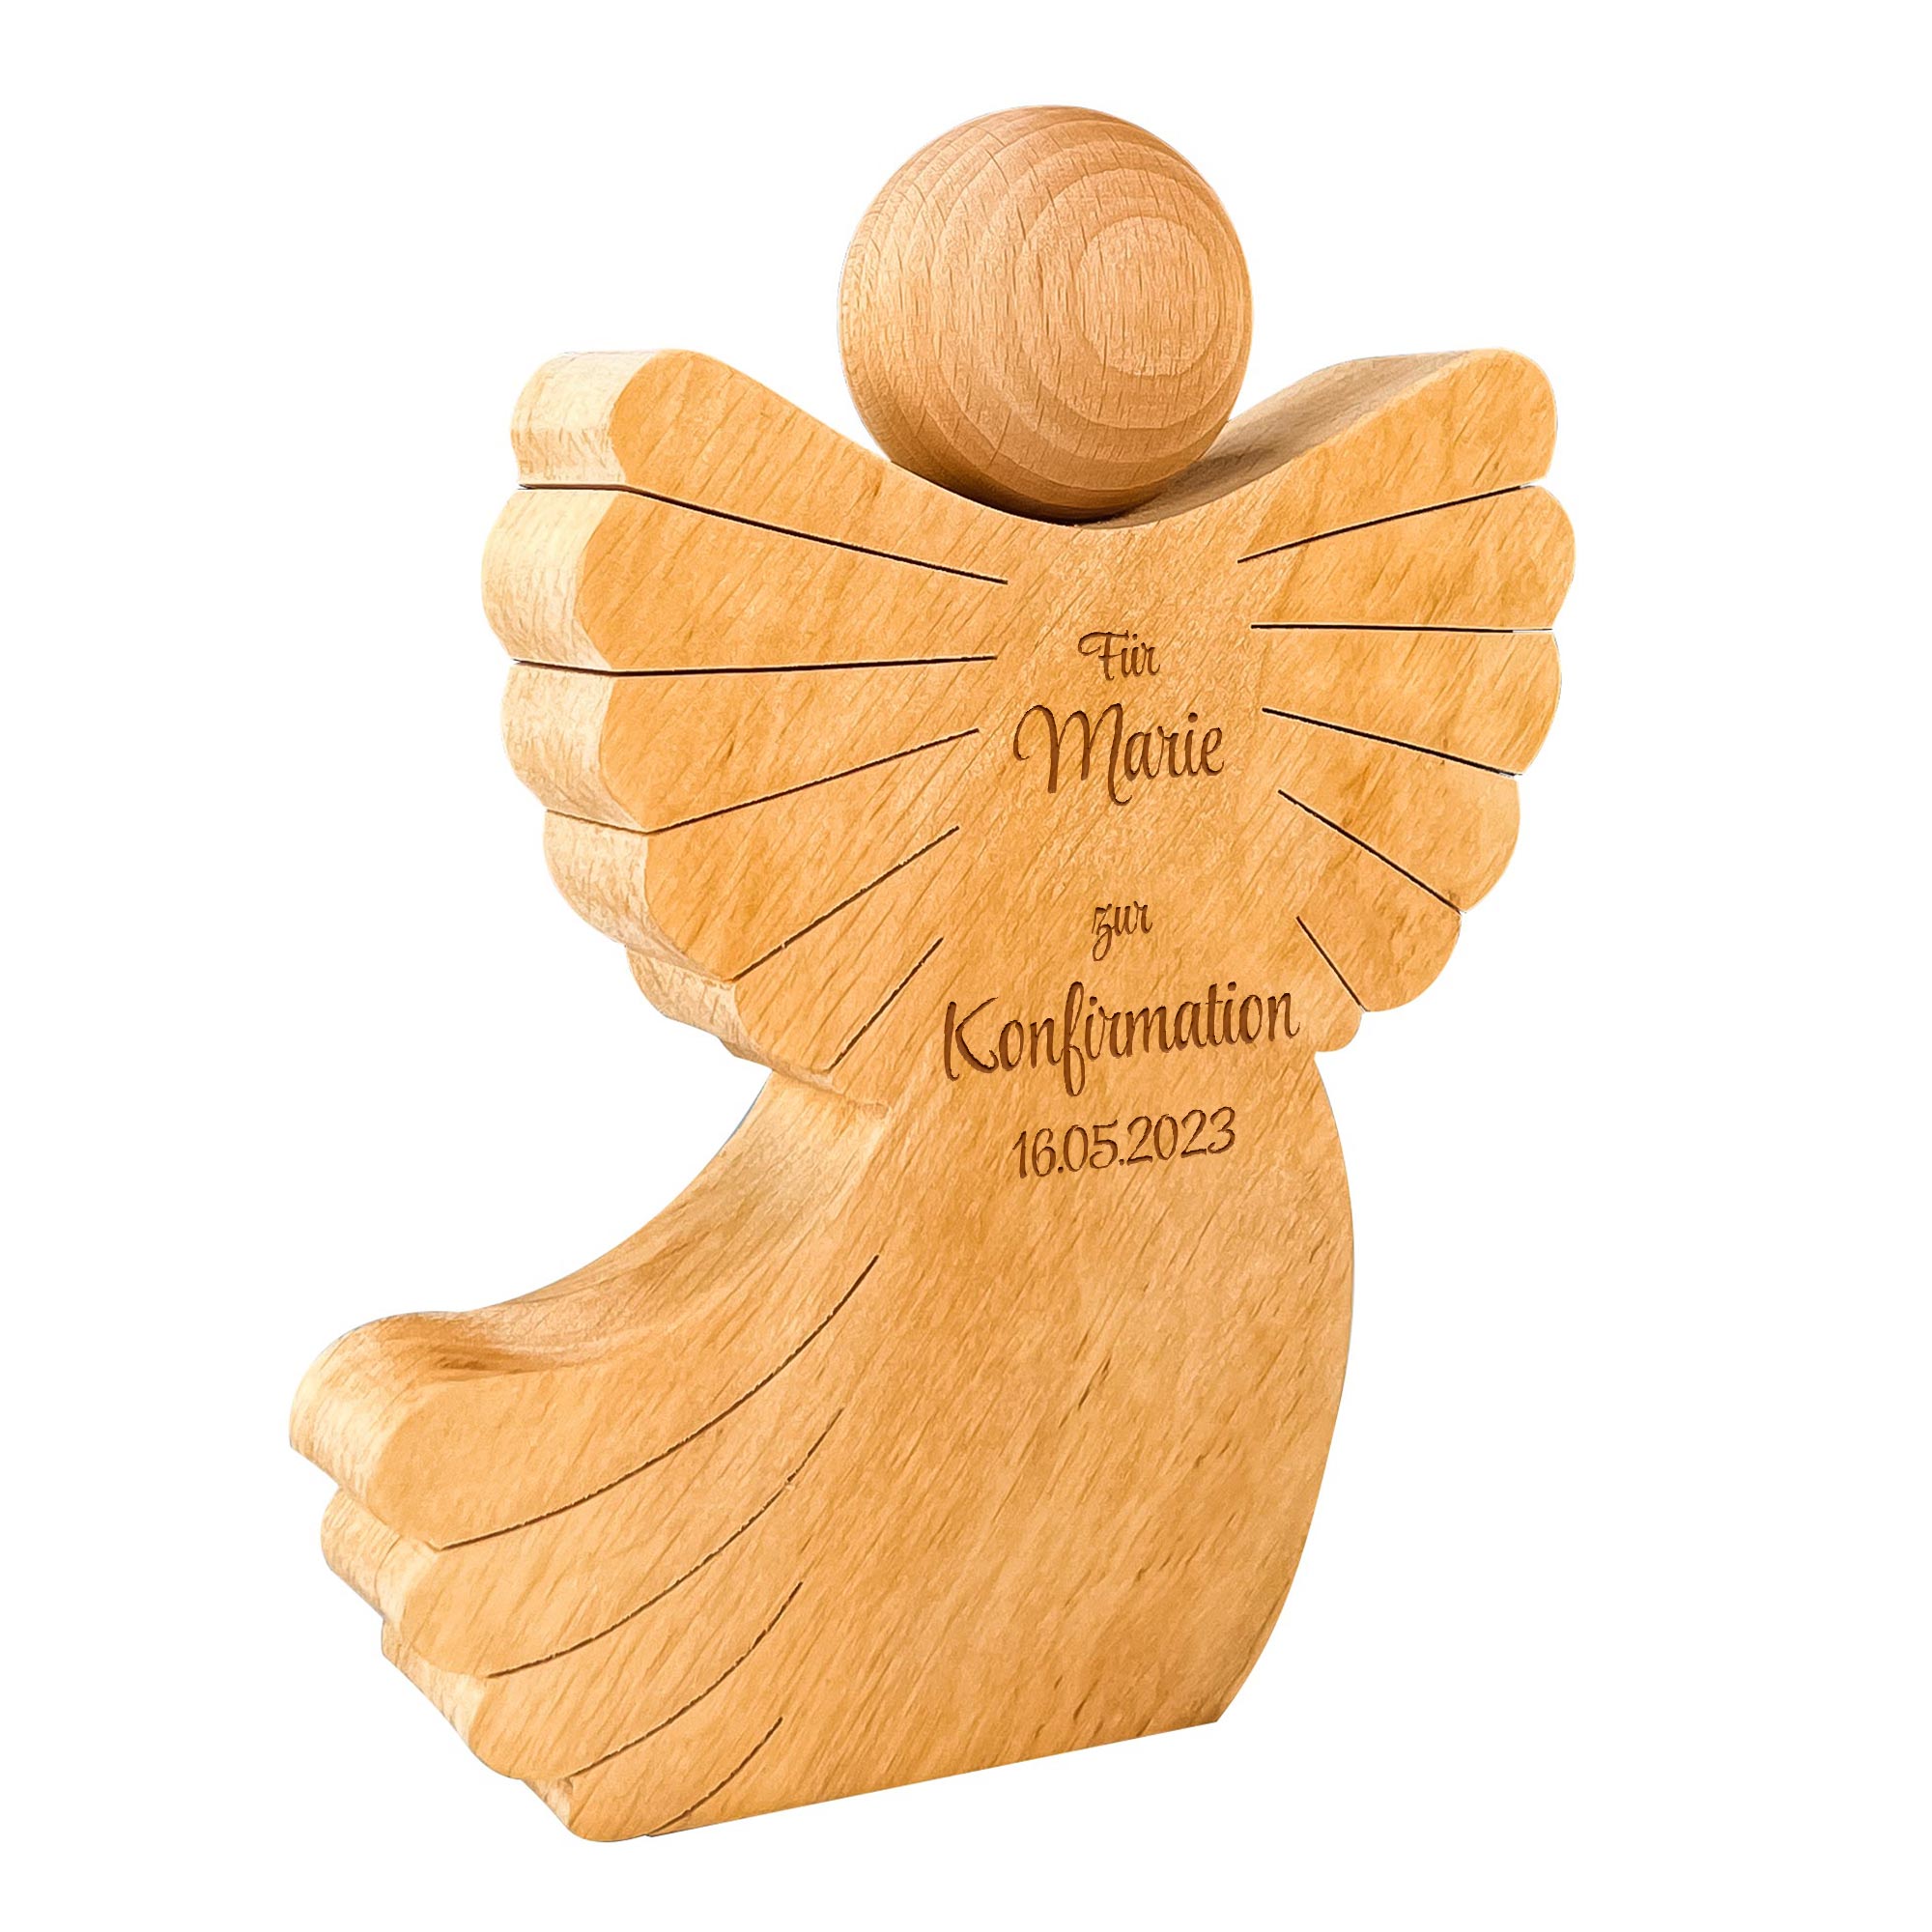 Engel mit Schweif aus Holz mit Gravur zur Konfirmation - Personalisiert